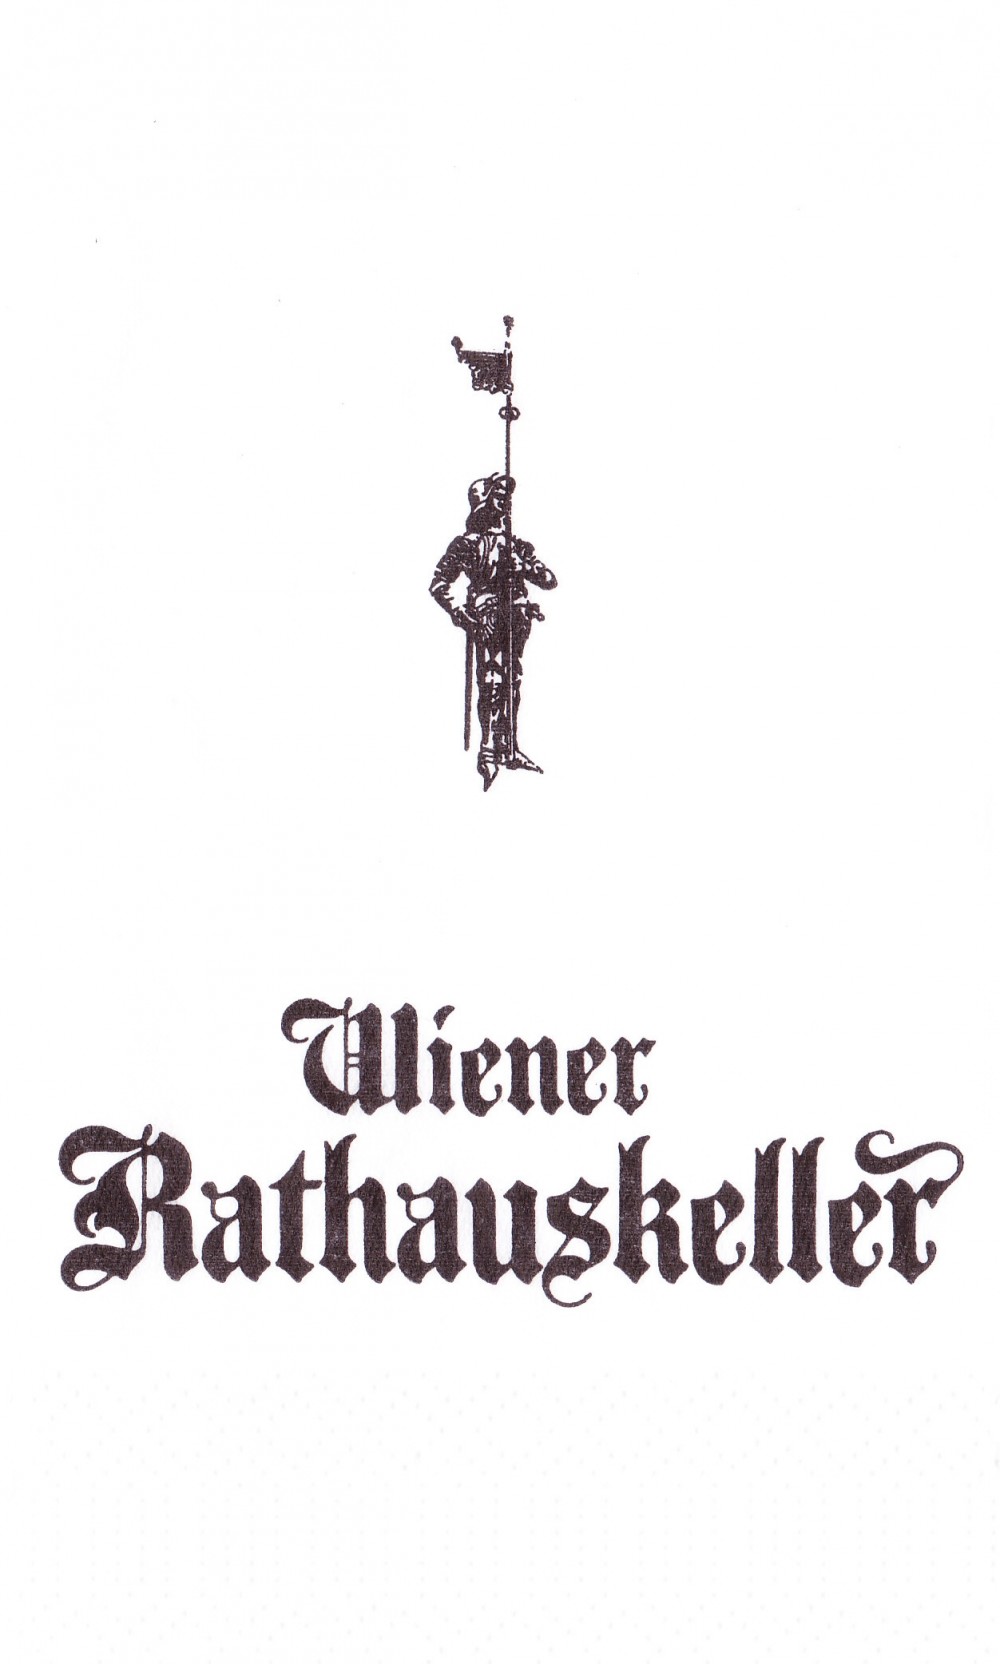 Rathauskeller - Der Wiener Rathauskeller - Wiener Rathauskeller - Wien